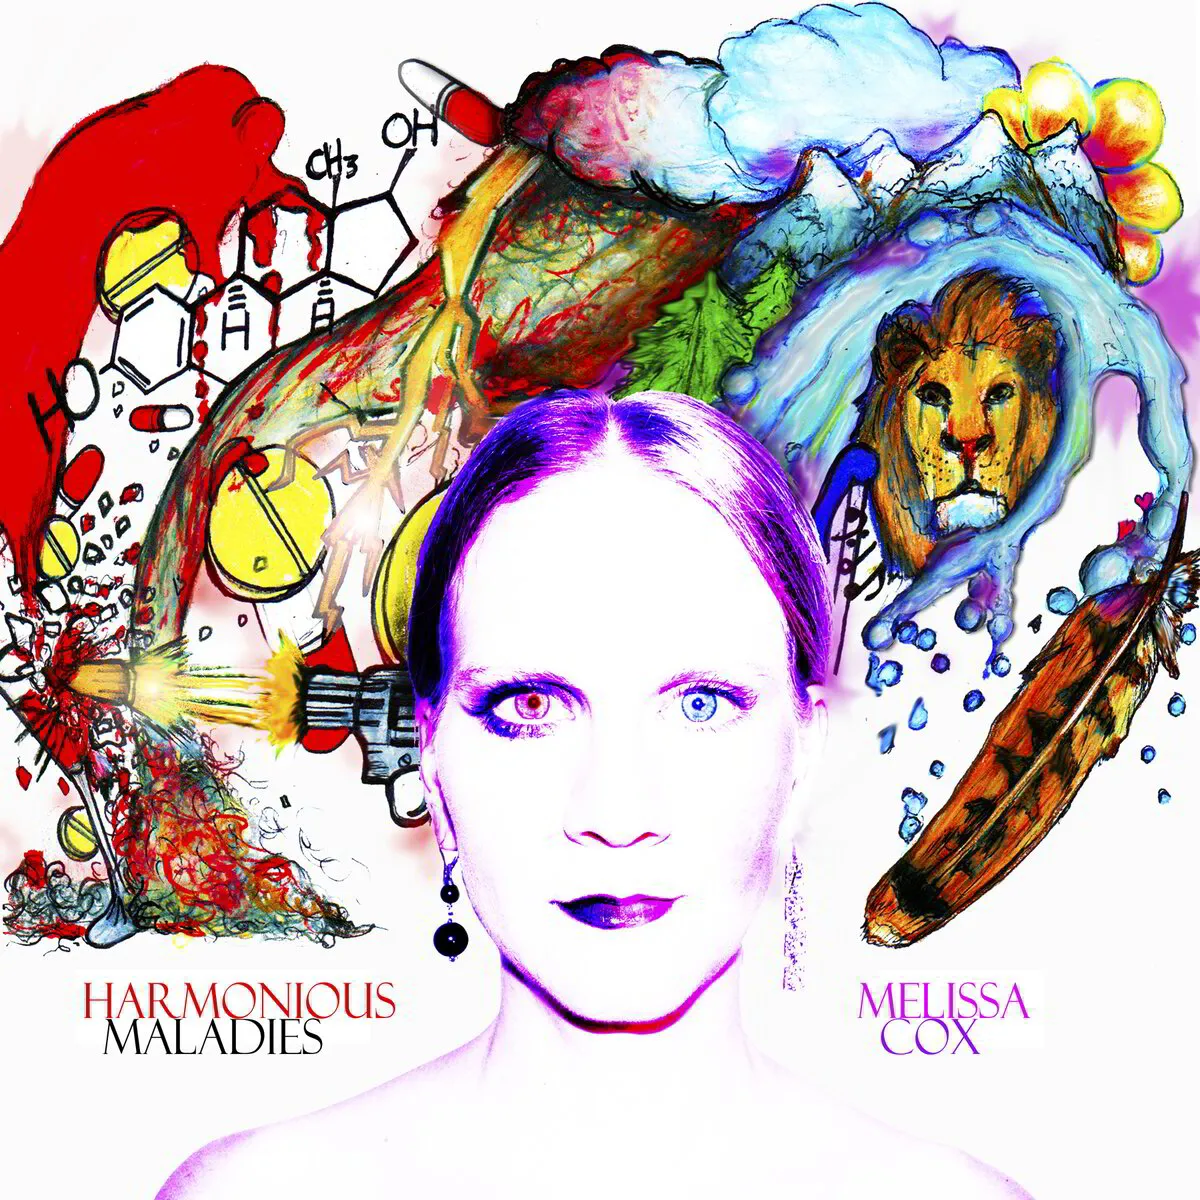 CD - "Harmonious Maladies" album (2011)